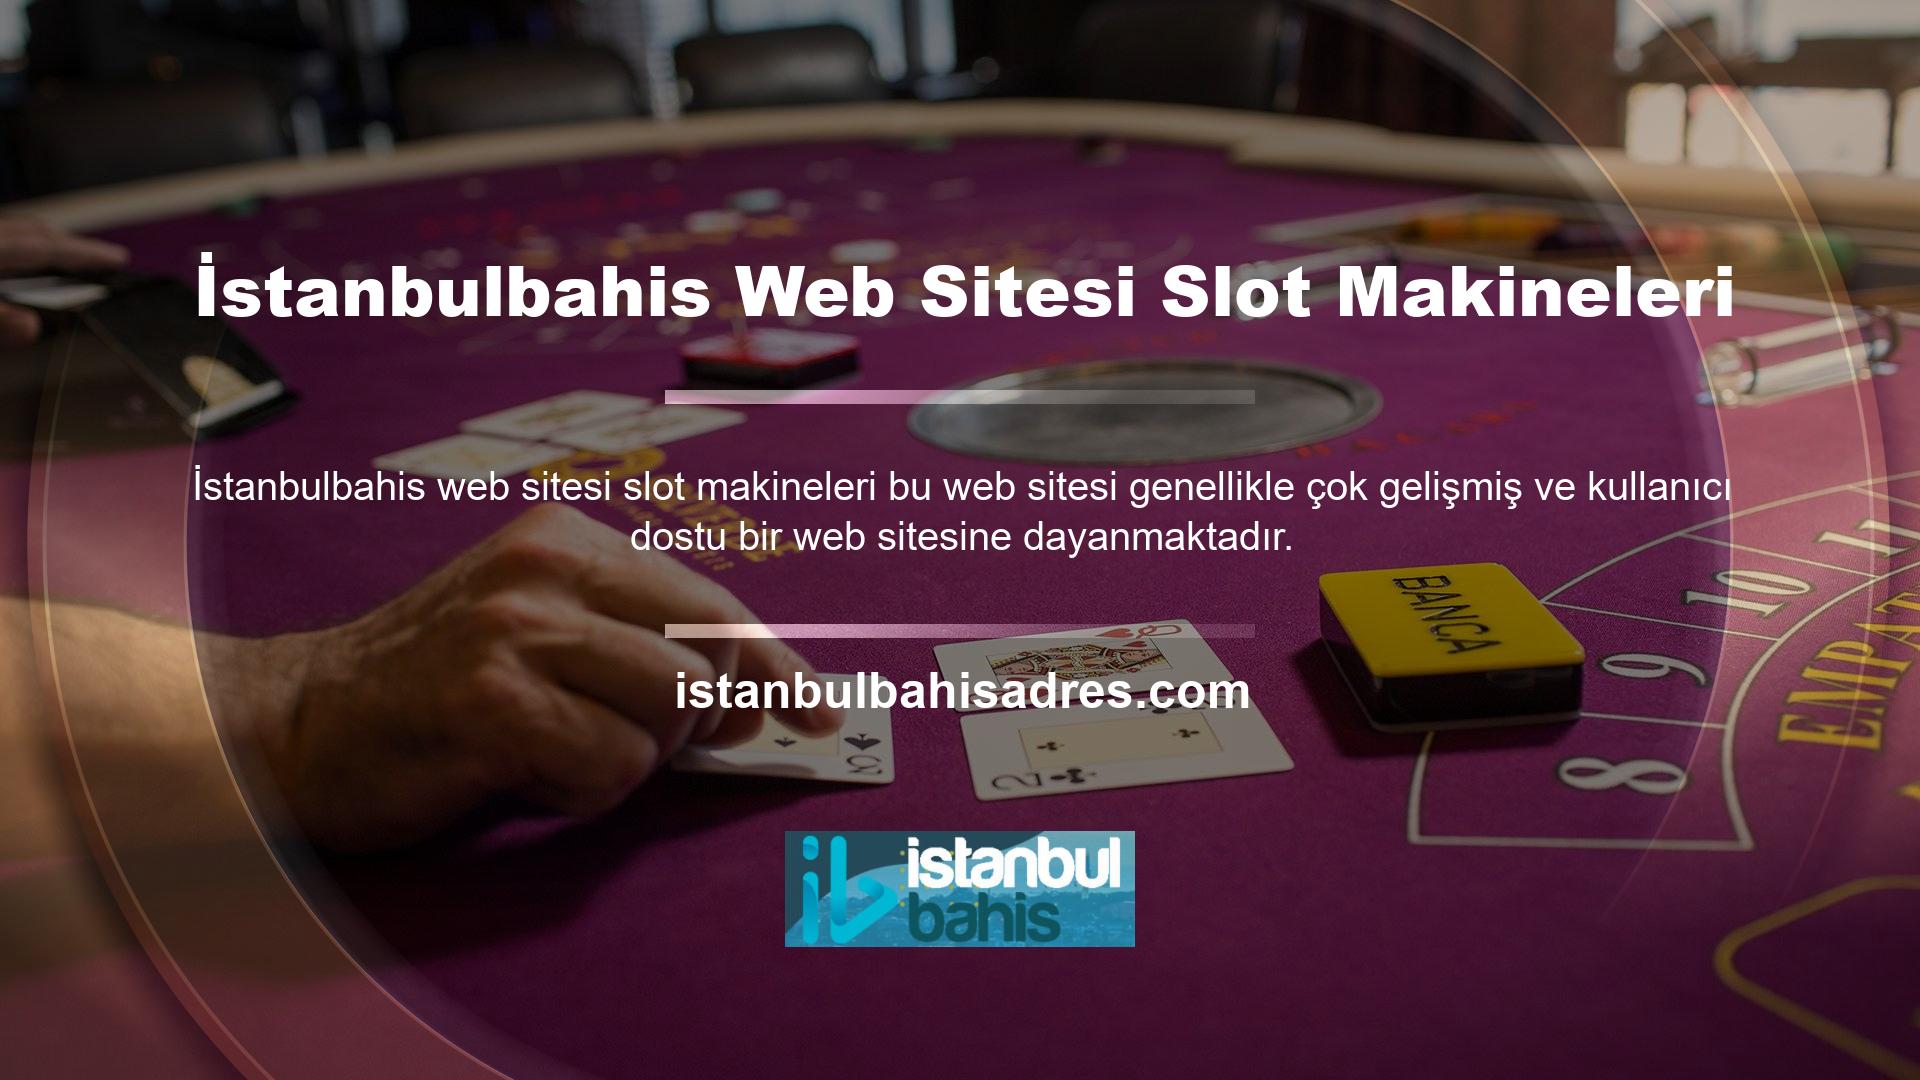 İstanbulbahis web sitesindeki bu slot sayfalarına erişim genellikle oldukça kolay bir işlemdir